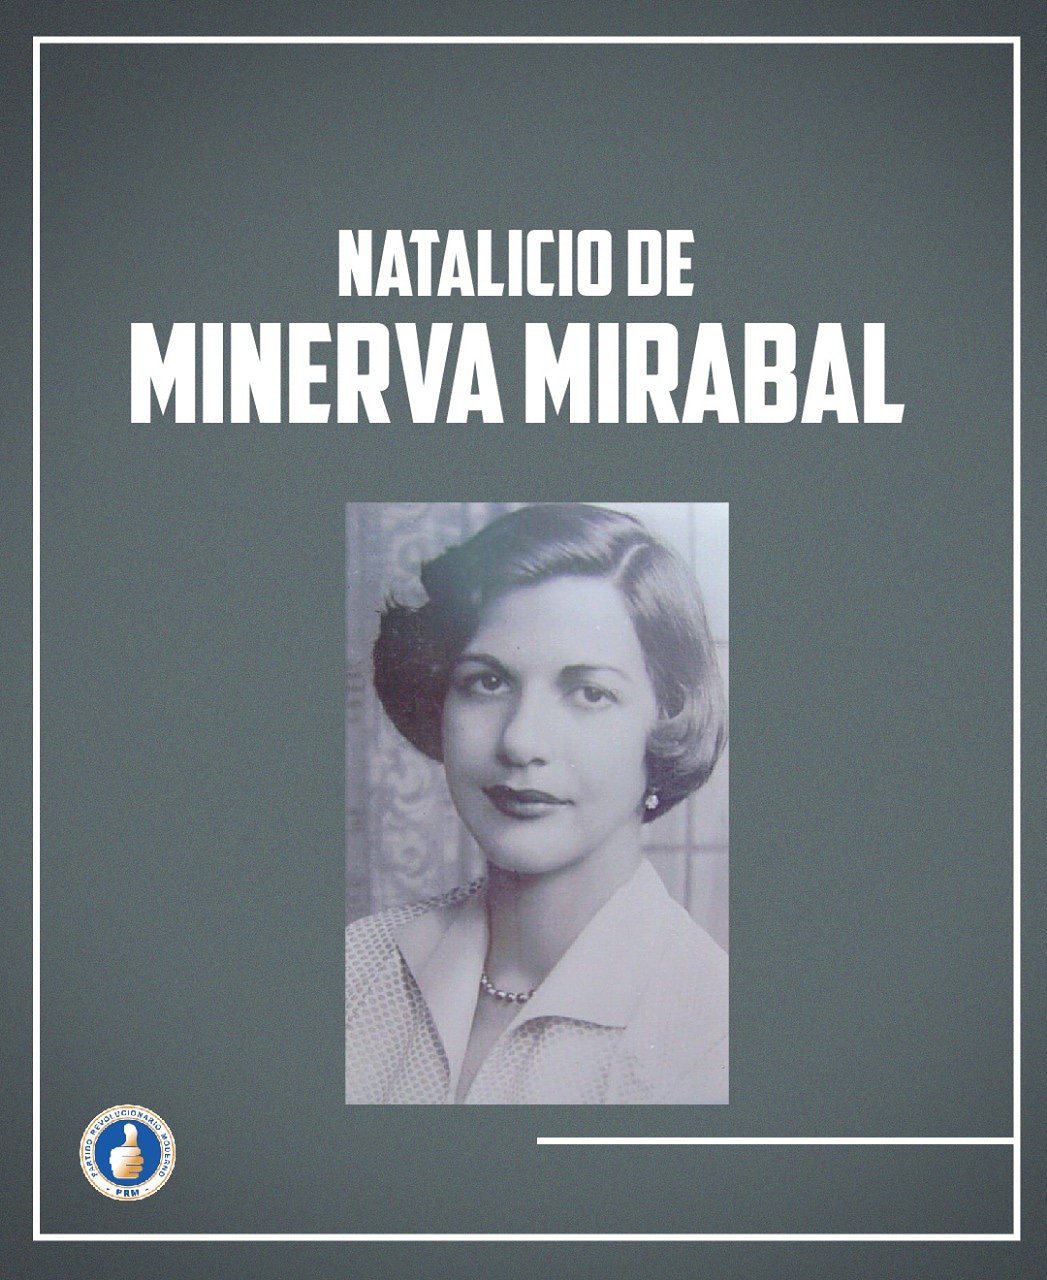 minerva mirabal